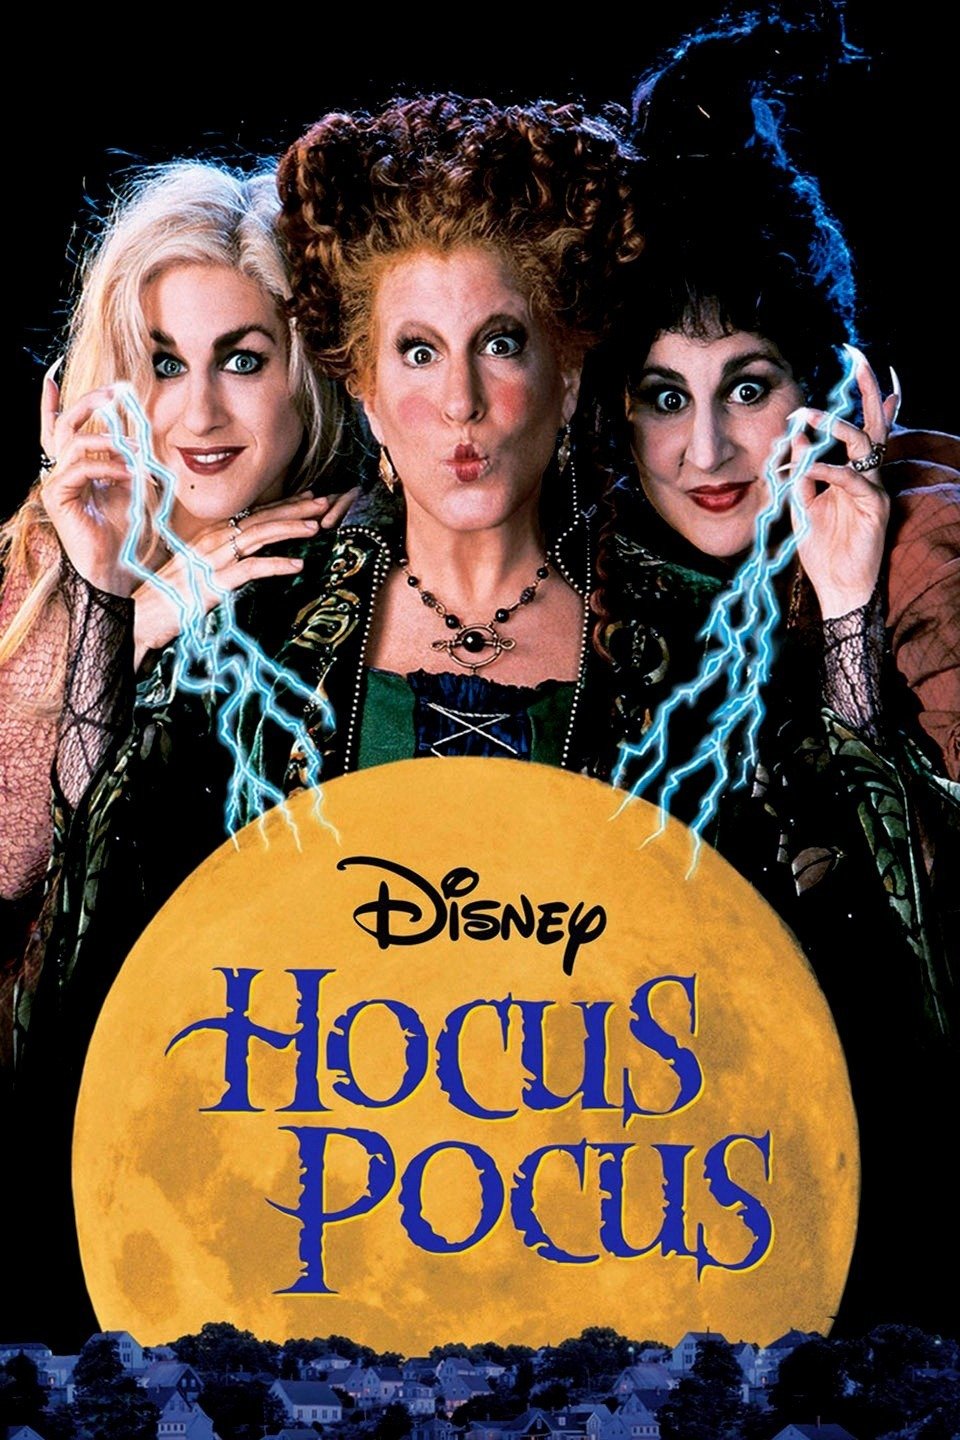 Movie Madness Featuring: Hocus Pocus (the original)